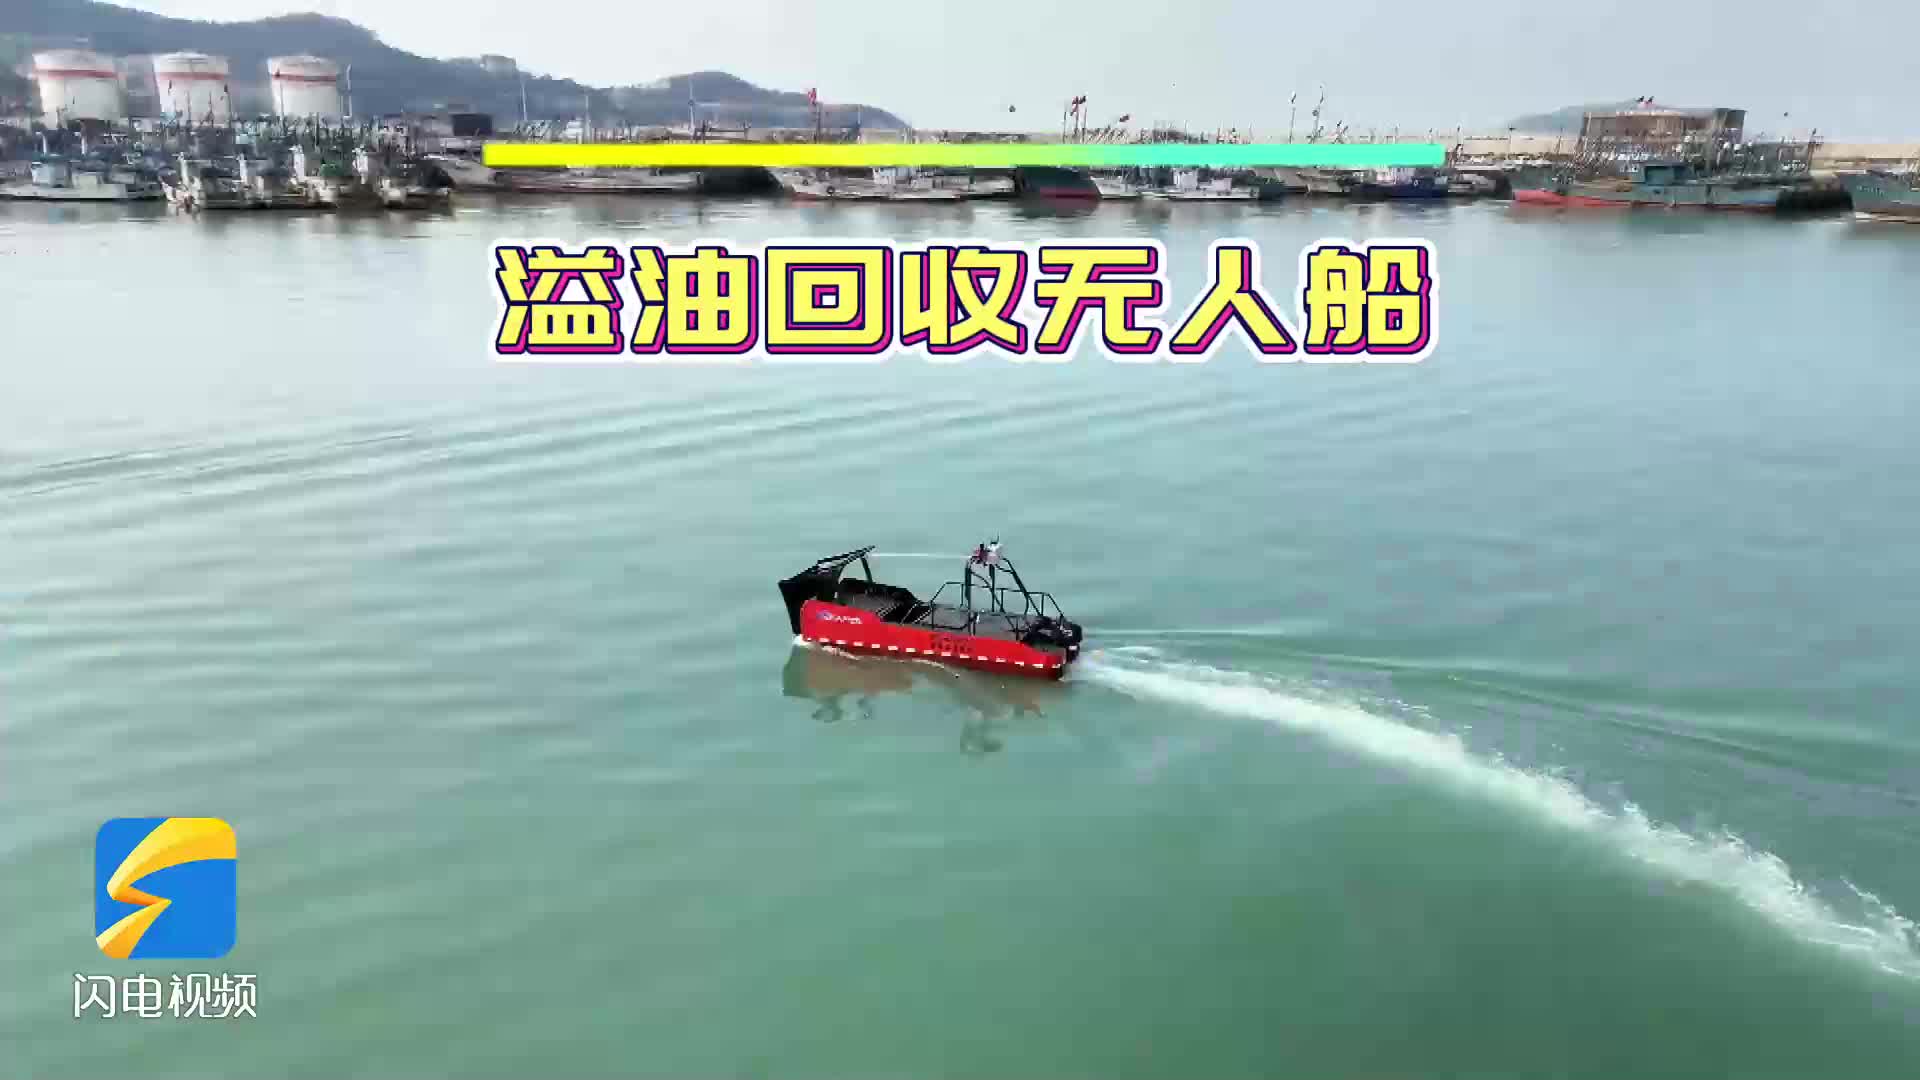 自主航行、避碰系统 山东交通学院研发小型溢油回收无人船